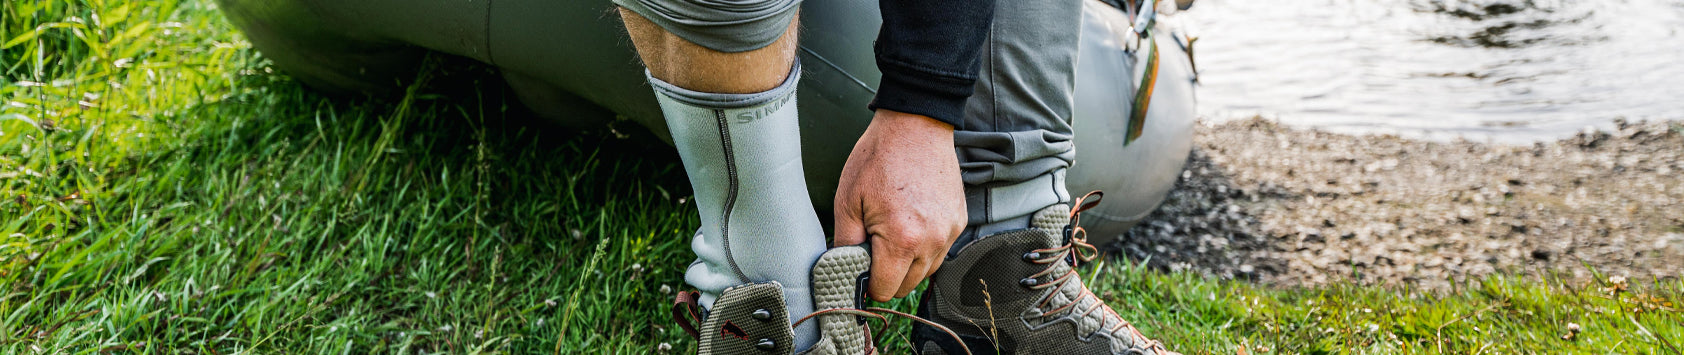 Simms Fishing Wading Boots & Socks – Natives Fly Fishing